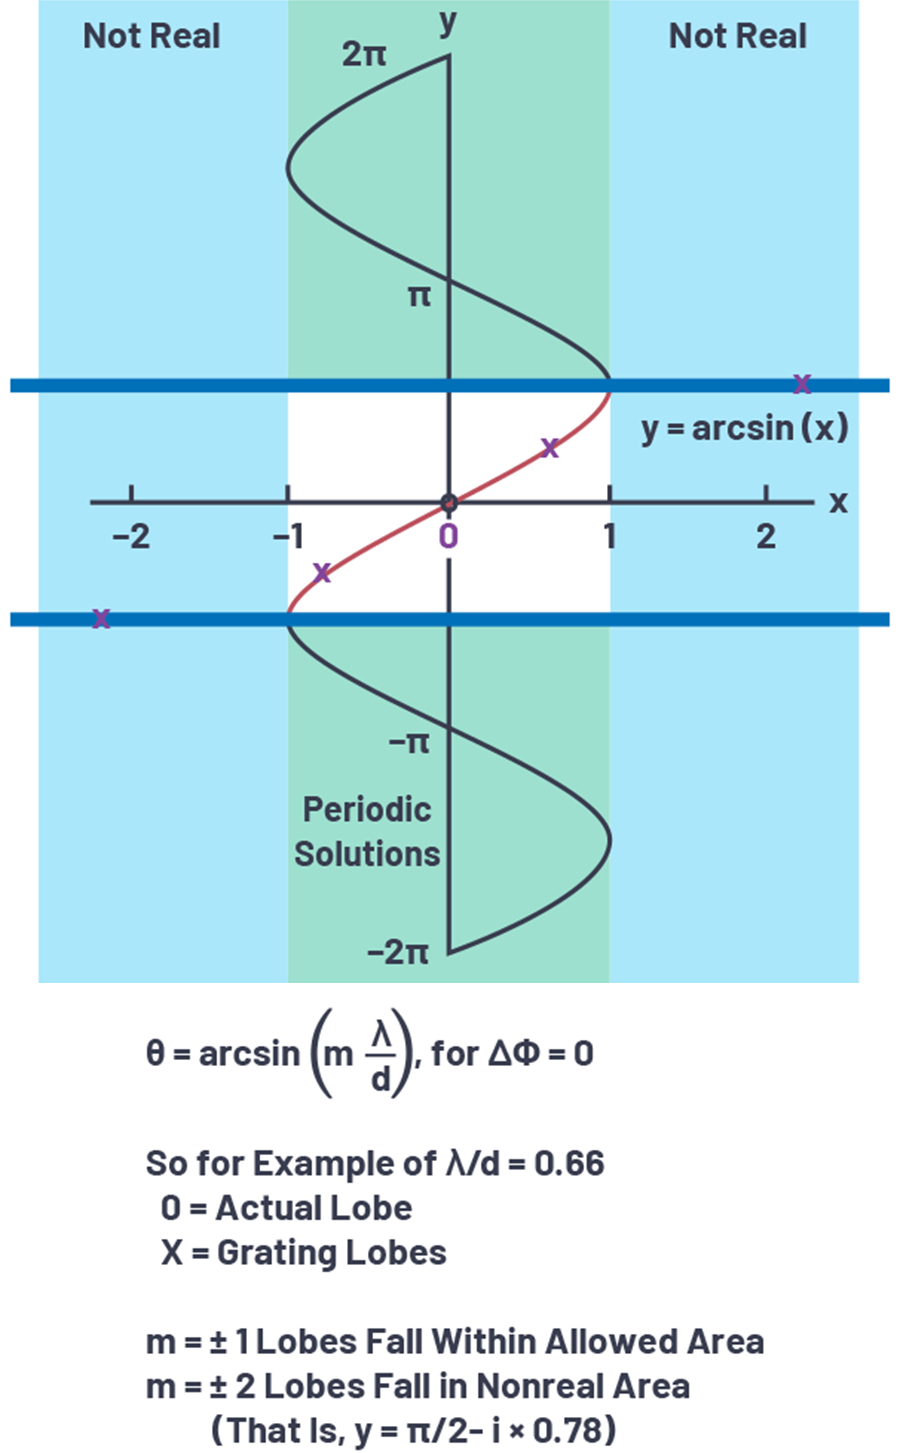 图2.arcsin函数在栅瓣中的应用。